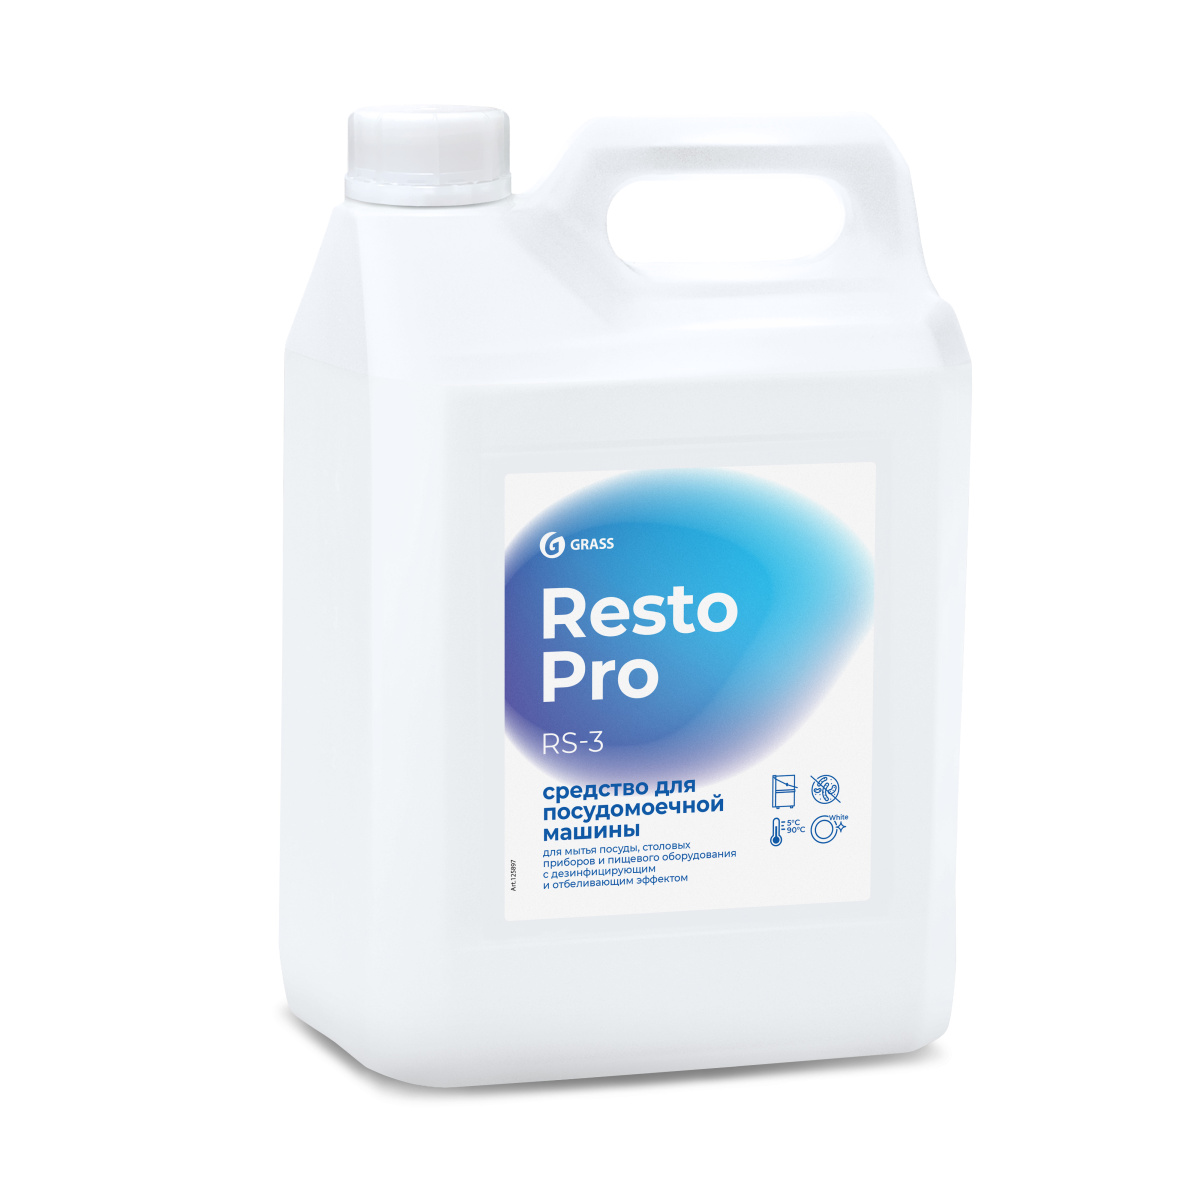 Resto Pro RS-3 Средство для посудомоечной машины 5 л